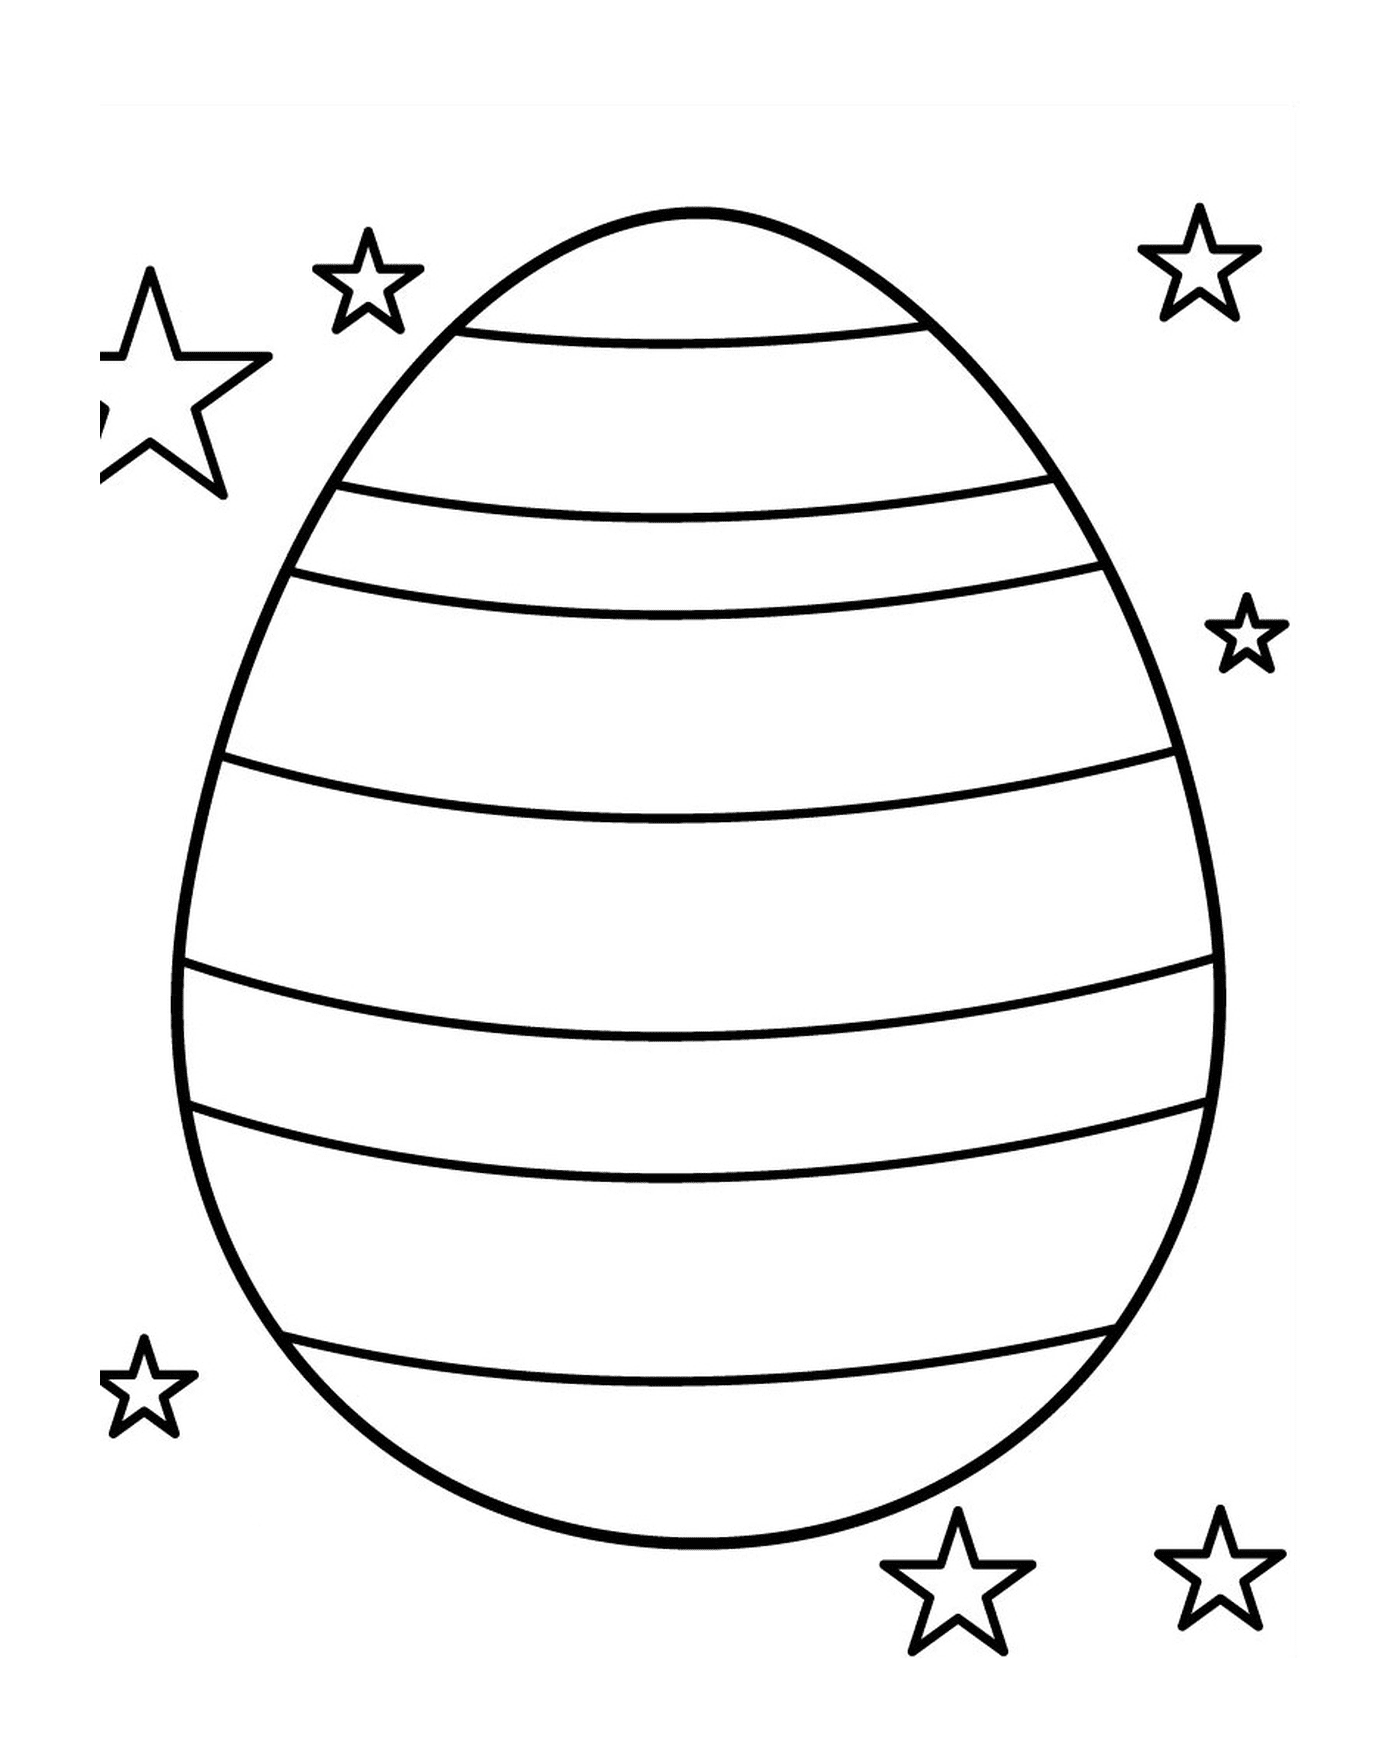  Звёздное пасхальное яйцо 